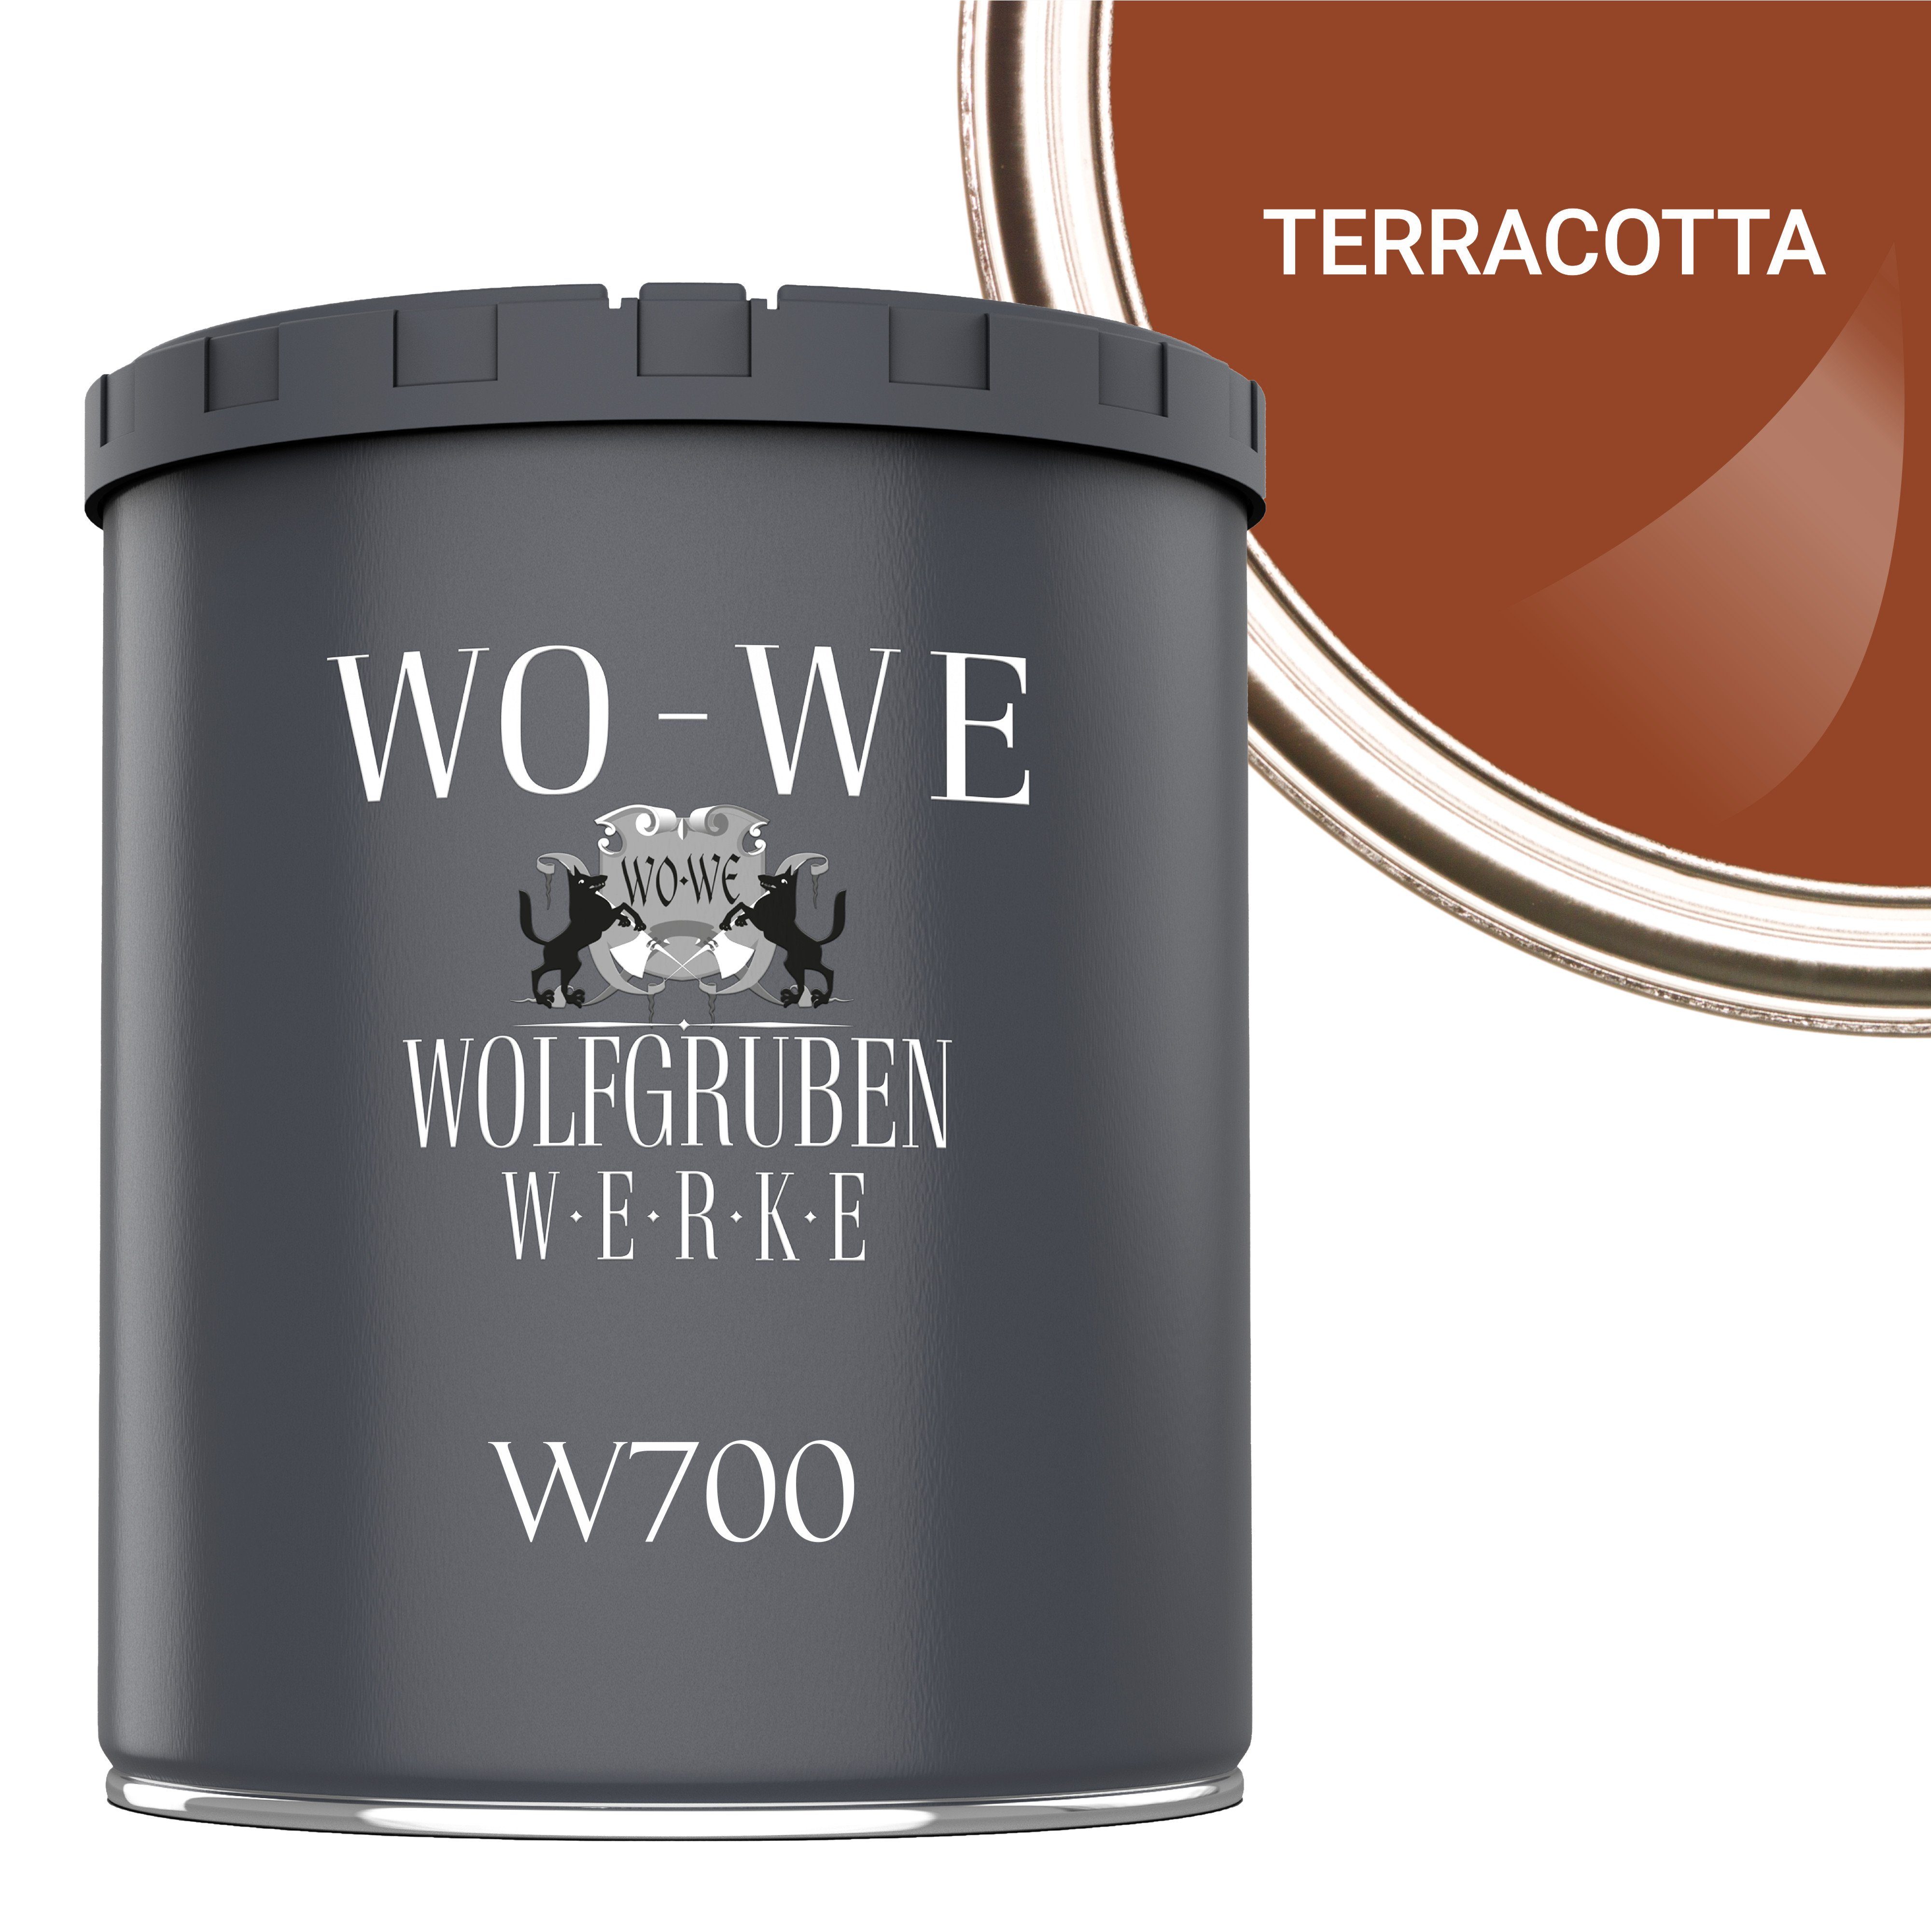 WO-WE Bodenversiegelung Betonfarbe Bodenfarbe Bodenbeschichtung W700, 1-10L, Seidenglänzend Terracotta